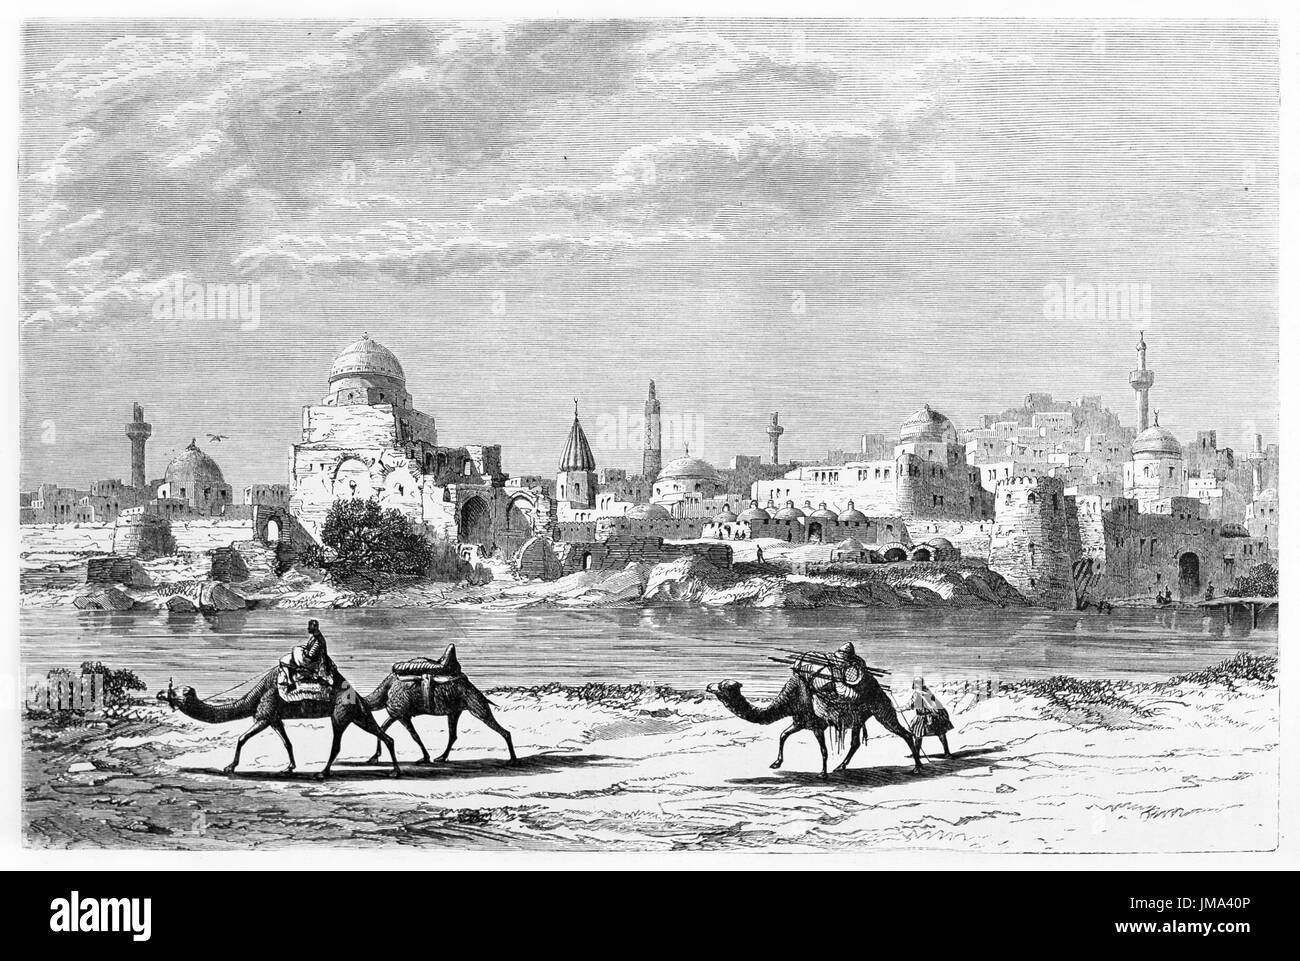 Mosul arabo caldo paesaggio urbano dalla riva del fiume Tigris camminato da persone su cammelli. Antica arte di stile acquaforte di Flandin, le Tour du Monde, 1861 Foto Stock